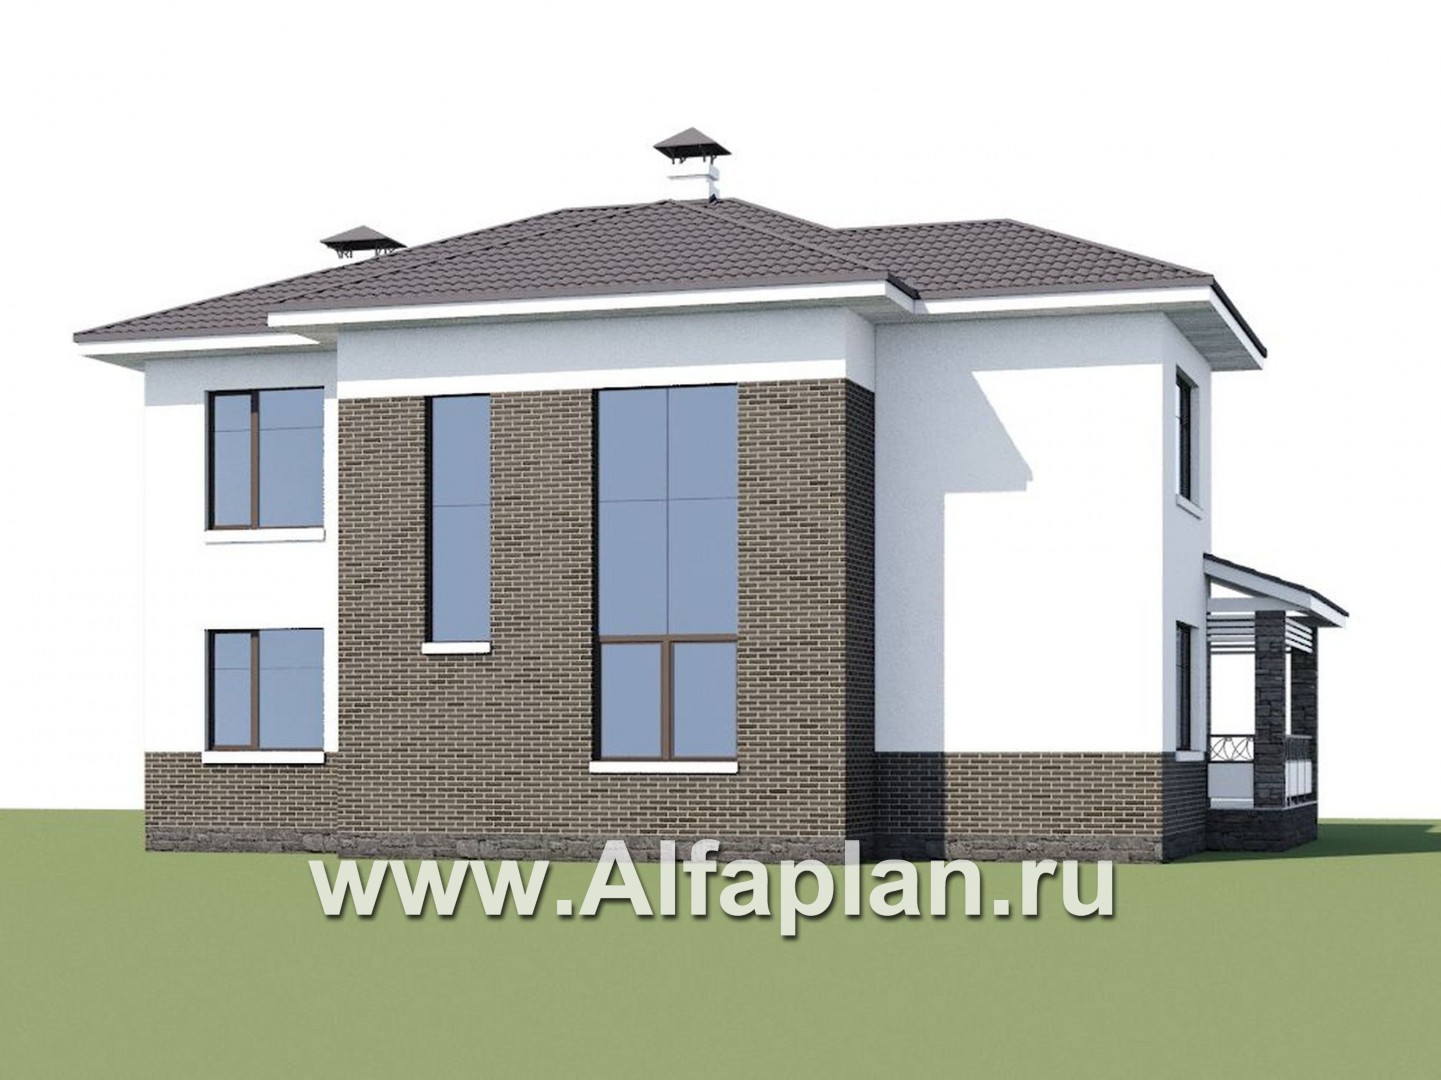 Проекты домов Альфаплан - «Статский советник» - комфортабельный коттедж в современном стиле - дополнительное изображение №1